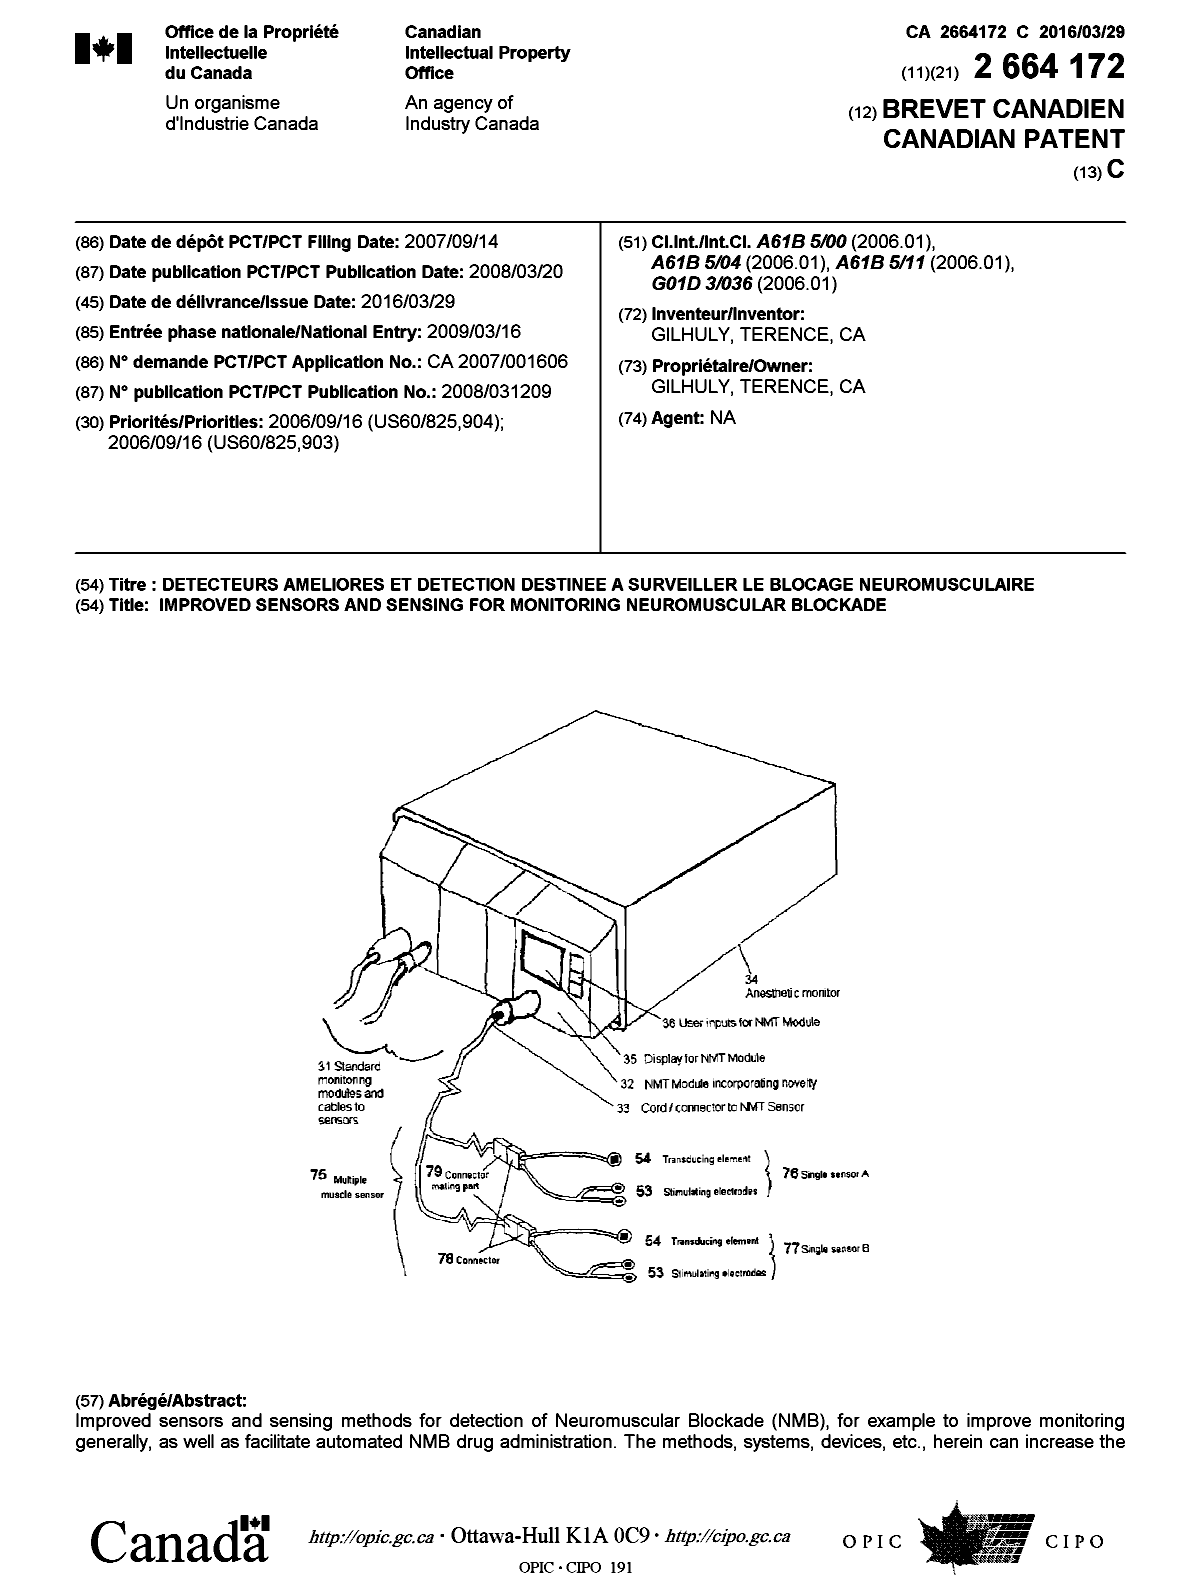 Document de brevet canadien 2664172. Page couverture 20151212. Image 1 de 2